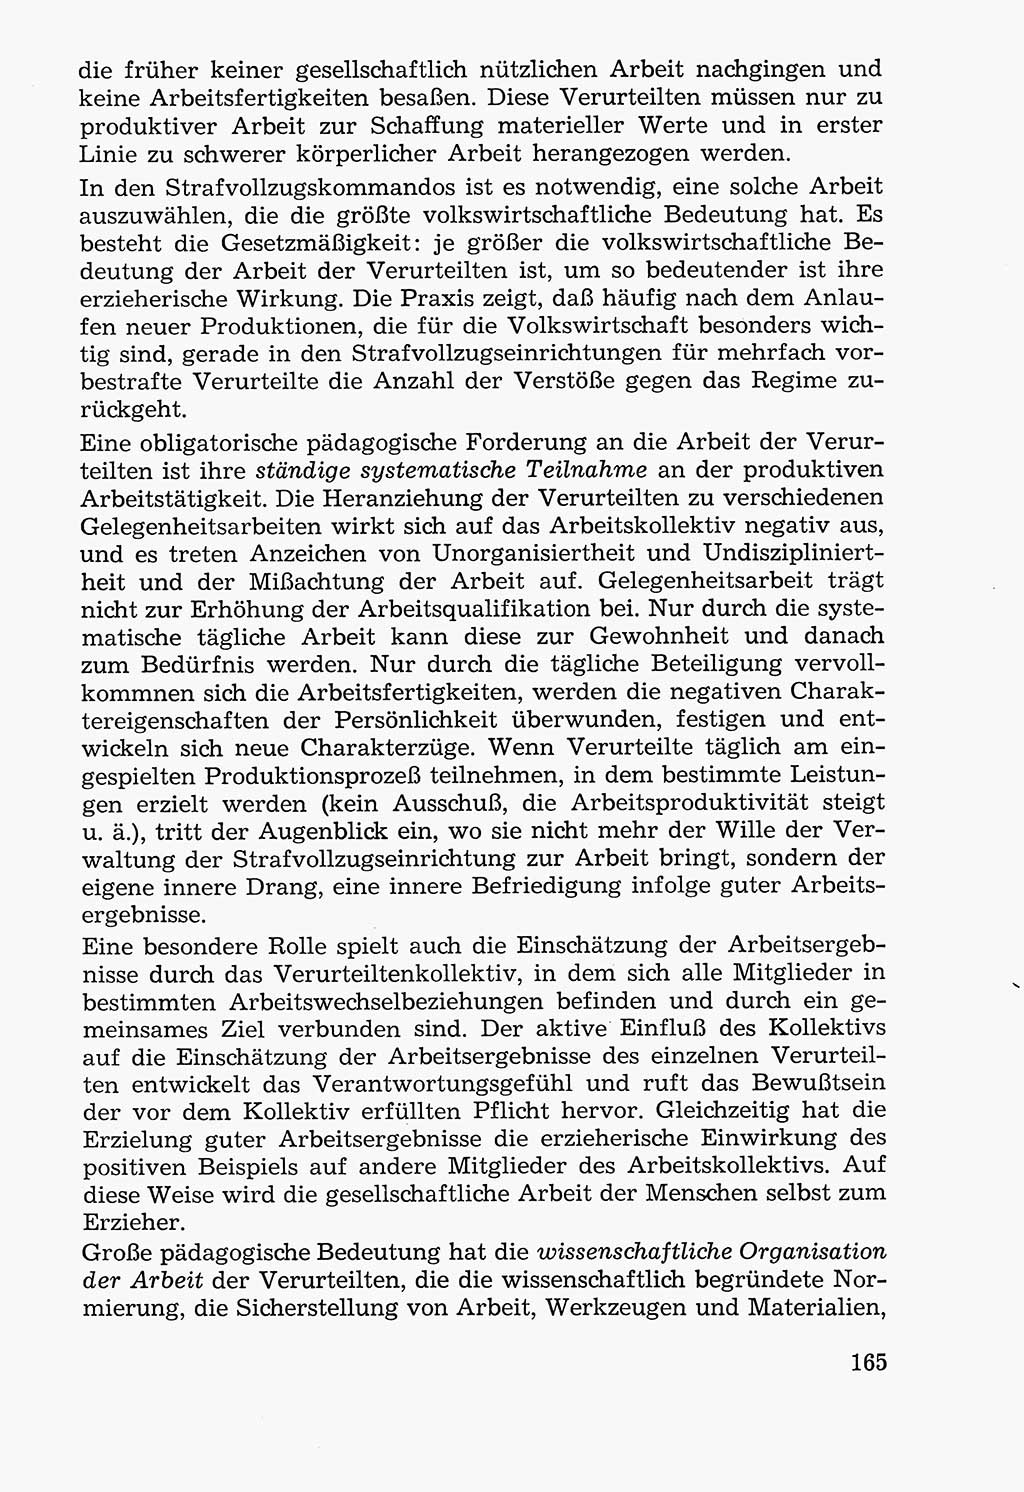 Lehrbuch der Strafvollzugspädagogik [Deutsche Demokratische Republik (DDR)] 1969, Seite 165 (Lb. SV-Pd. DDR 1969, S. 165)